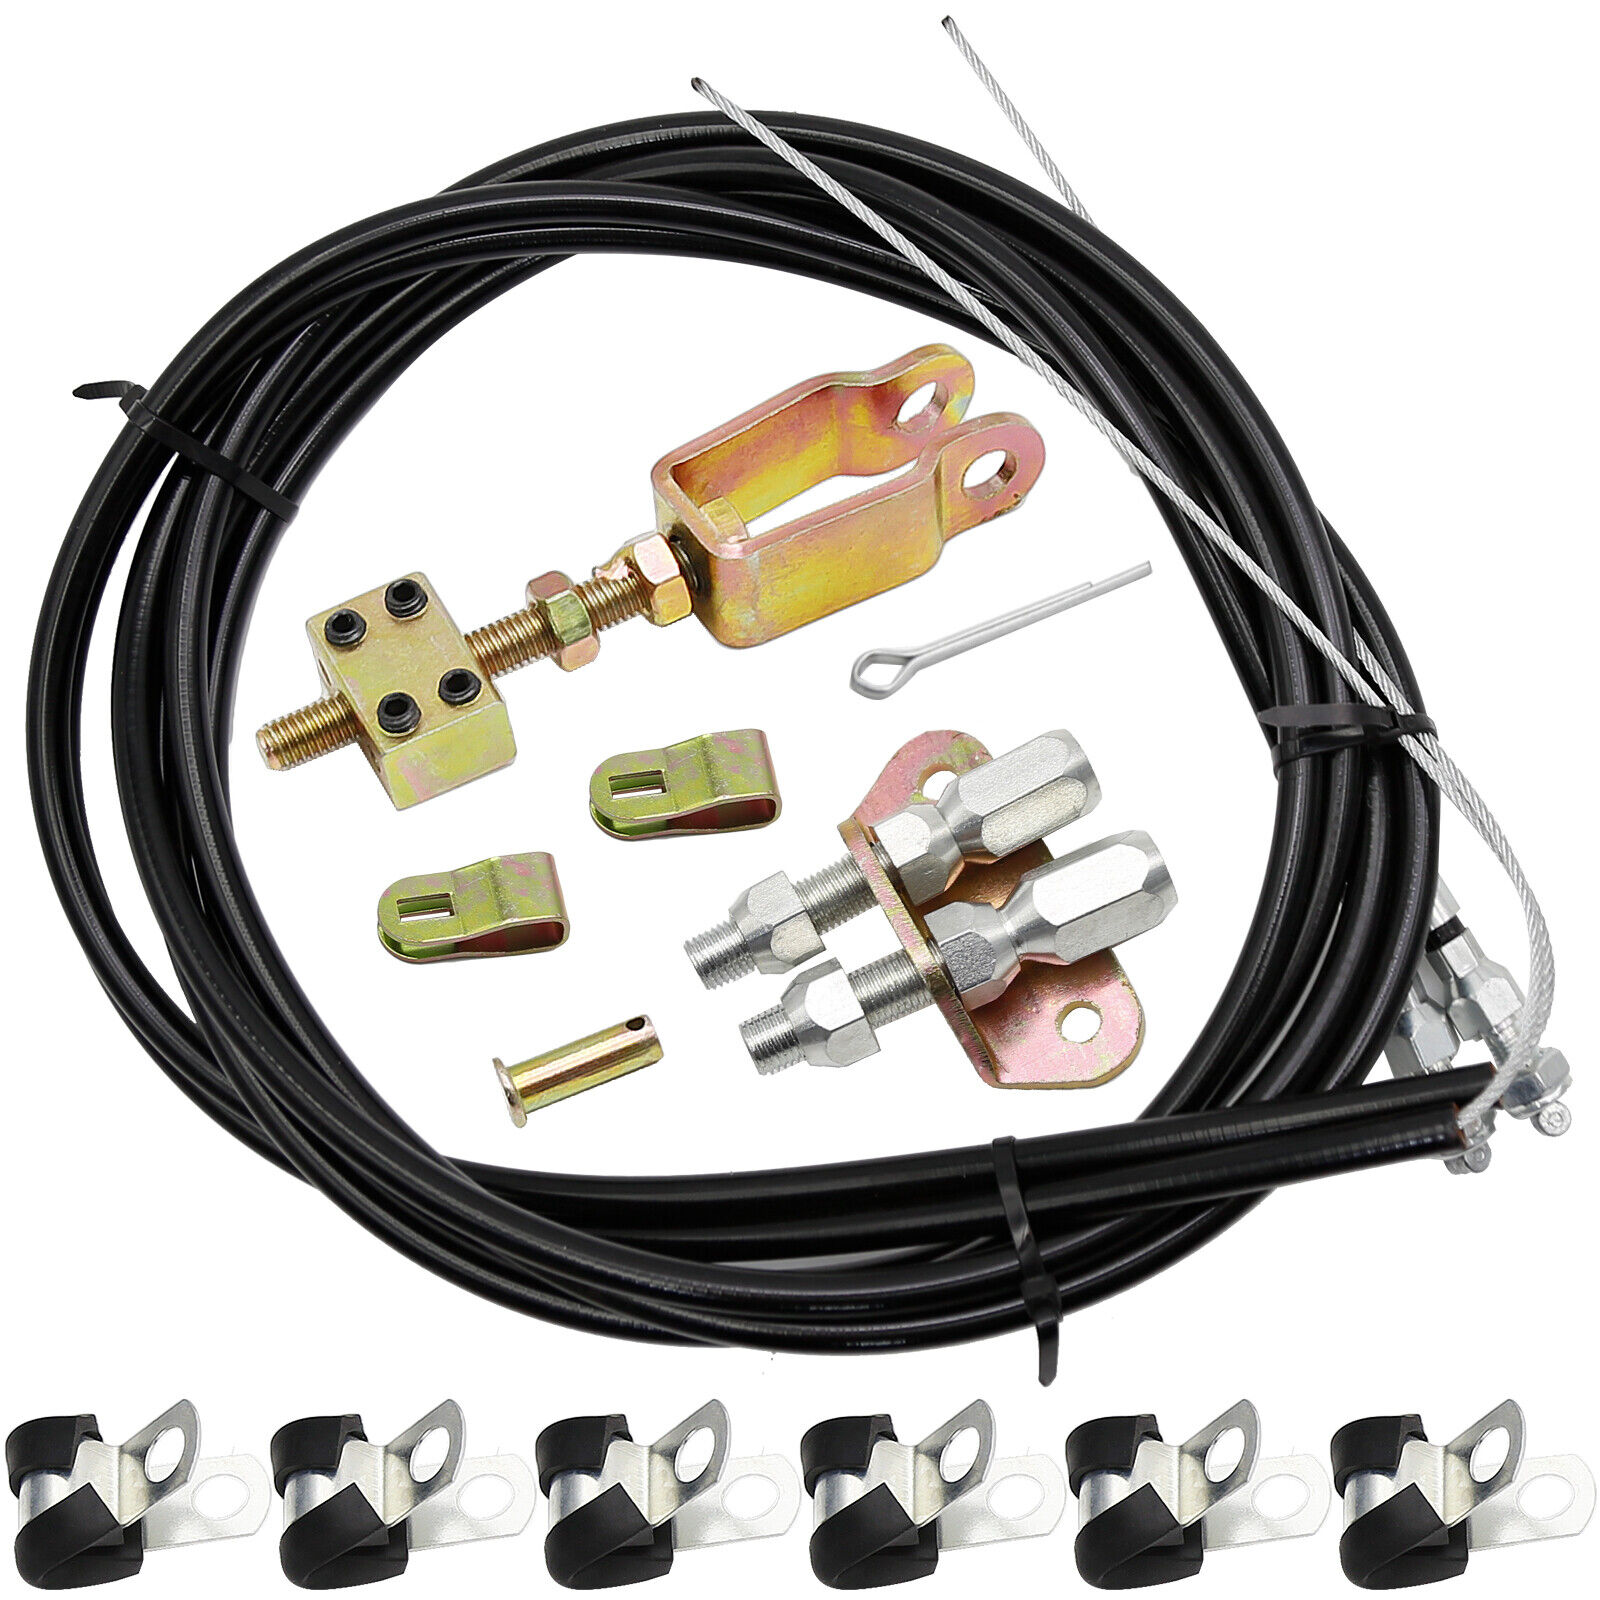 Universal Rear Parking Brake Emergency Electronic Brake Cable Wilwood 330-9371